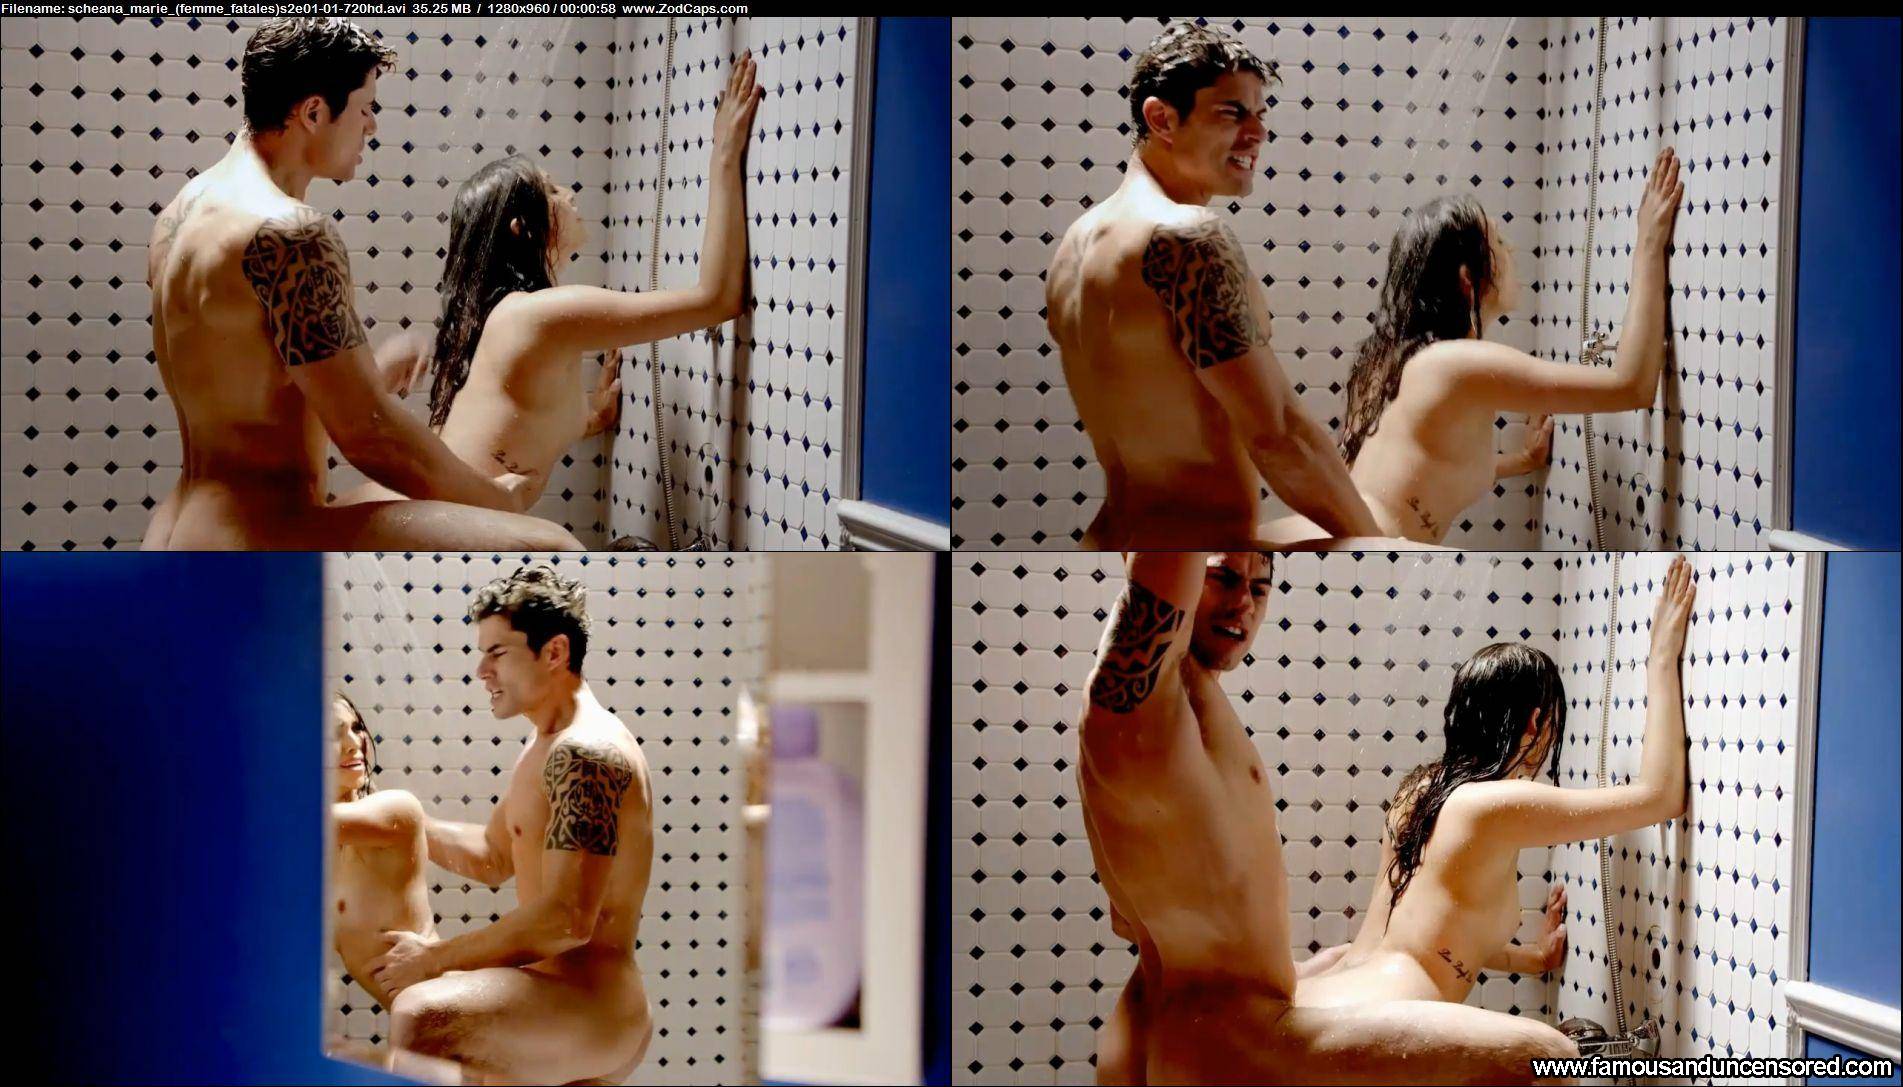 Scheana shay naked - Vanderpump Rules' Scheana Shay’s Aussie boyfriend...